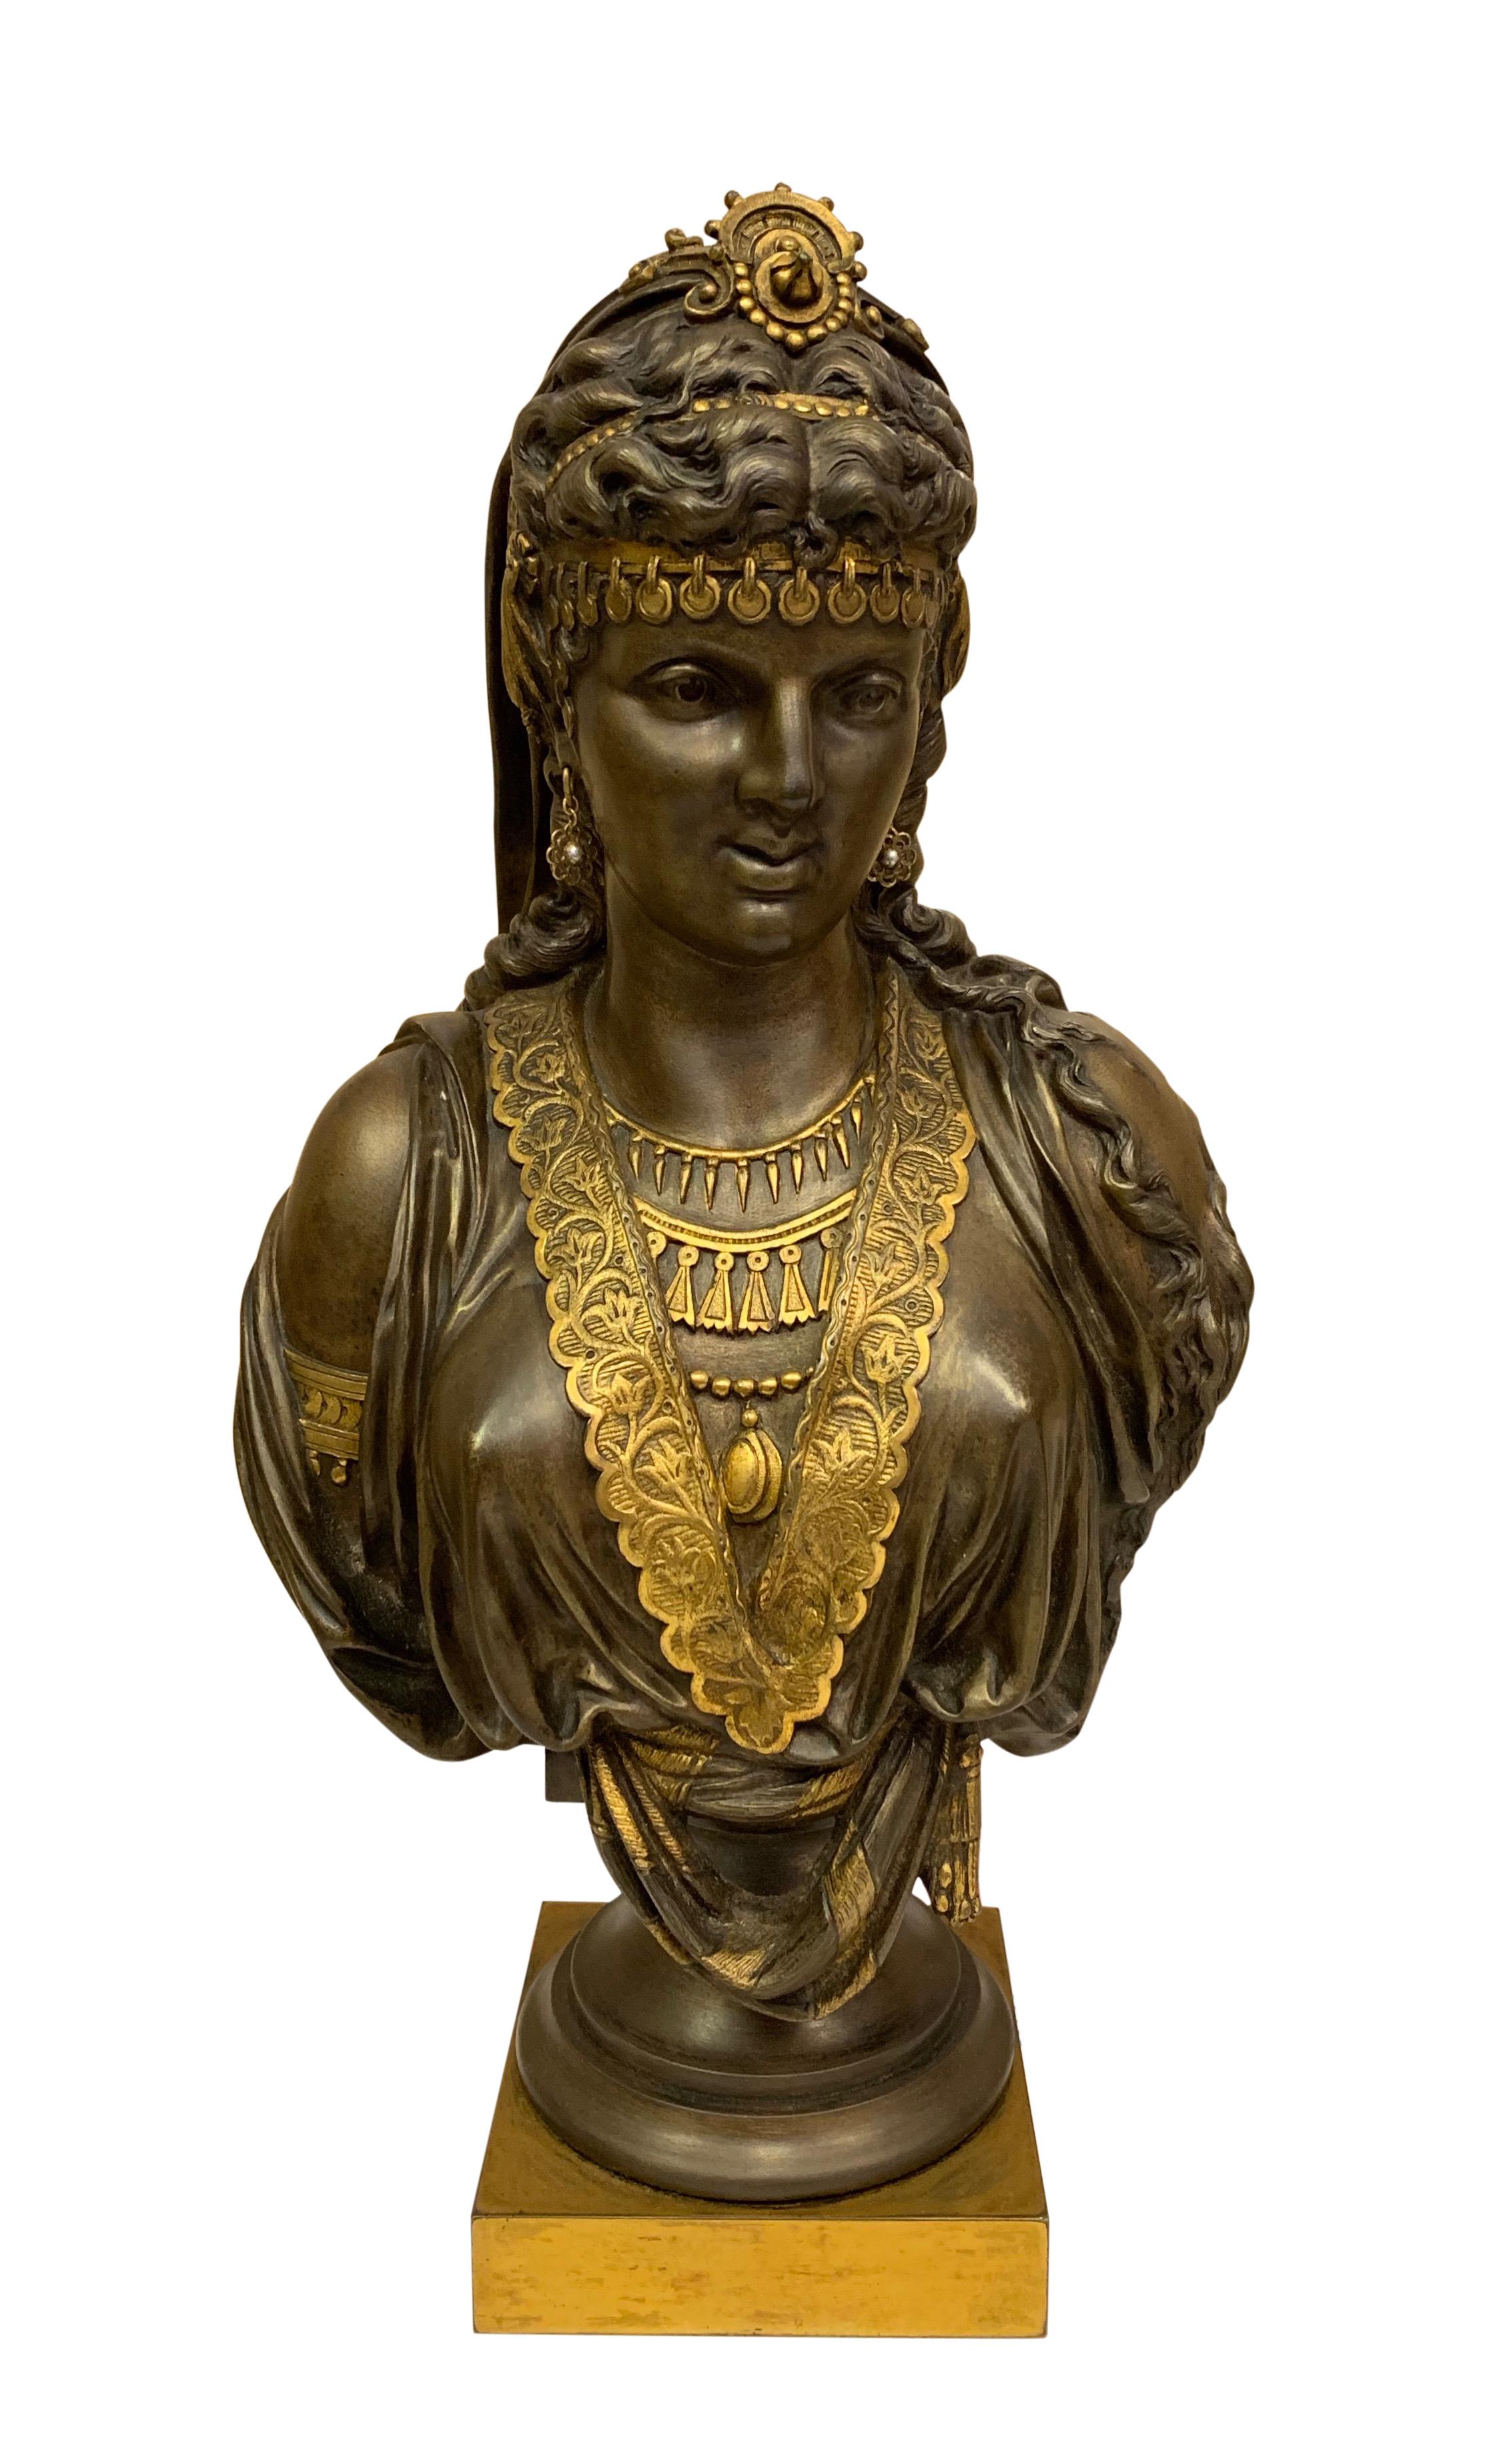 Paire de bustes orientalistes en bronze doré et patiné de superbe qualité datant du XIXe siècle. Chaque jeune femme est vêtue d'une tenue traditionnelle du Moyen-Orient et porte des colliers de perles et des boucles d'oreilles,

vers